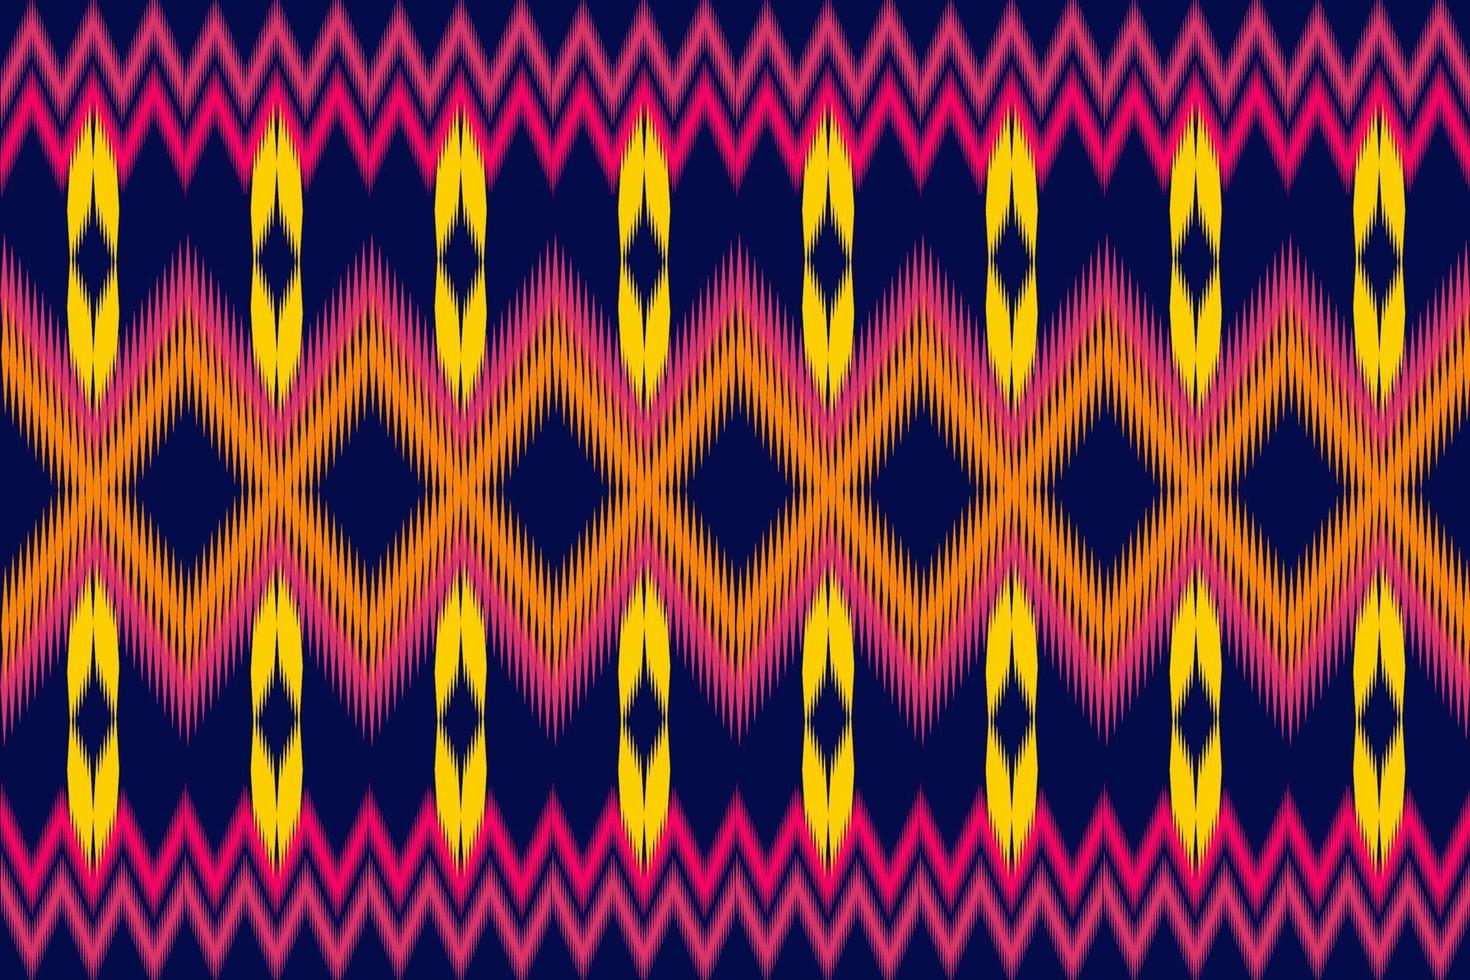 motif de tissu ikat géométrique ethnique traditionnel vecteur